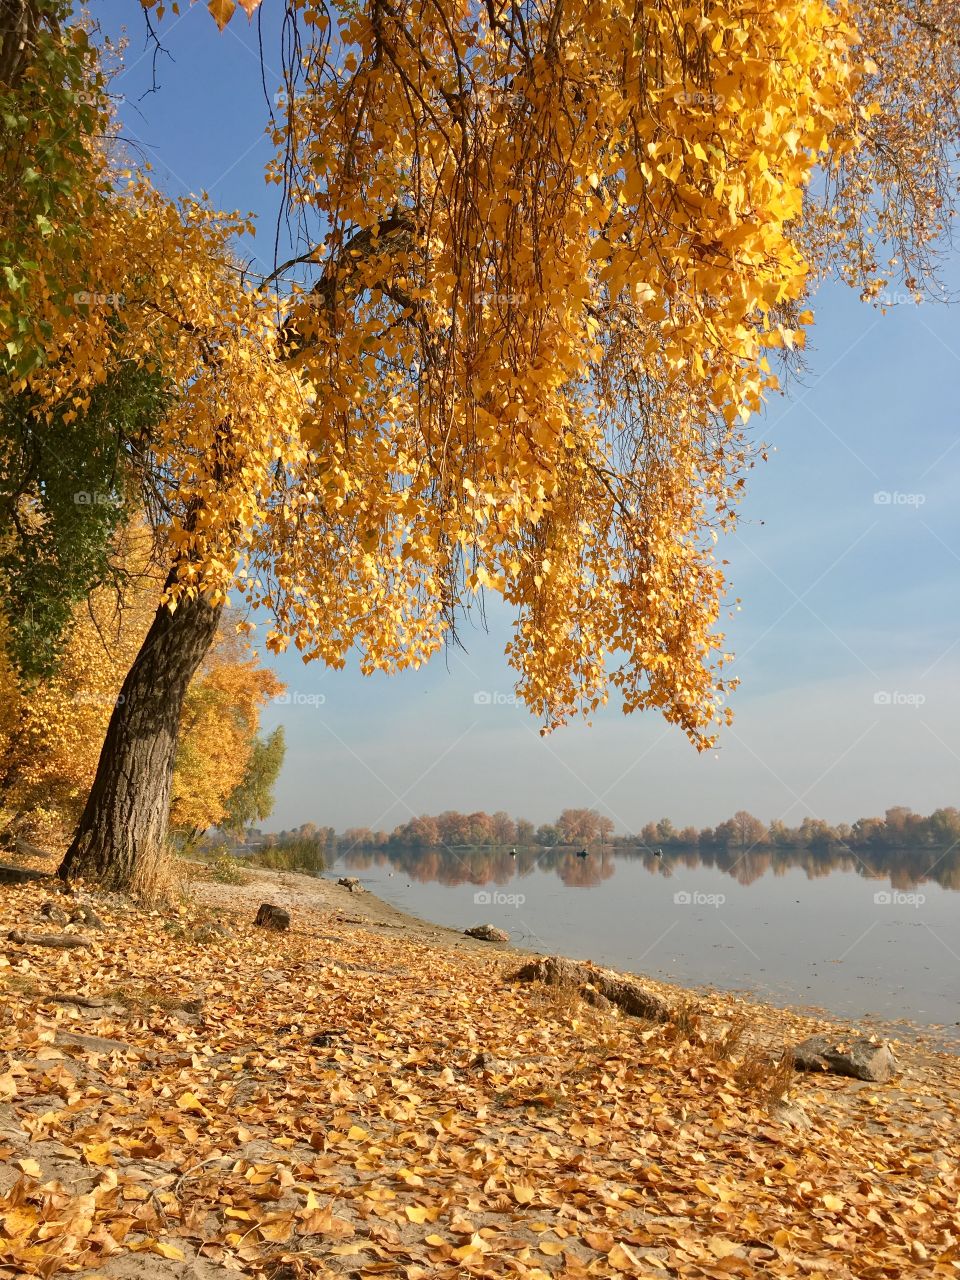 Golden autumn in Kyiv 